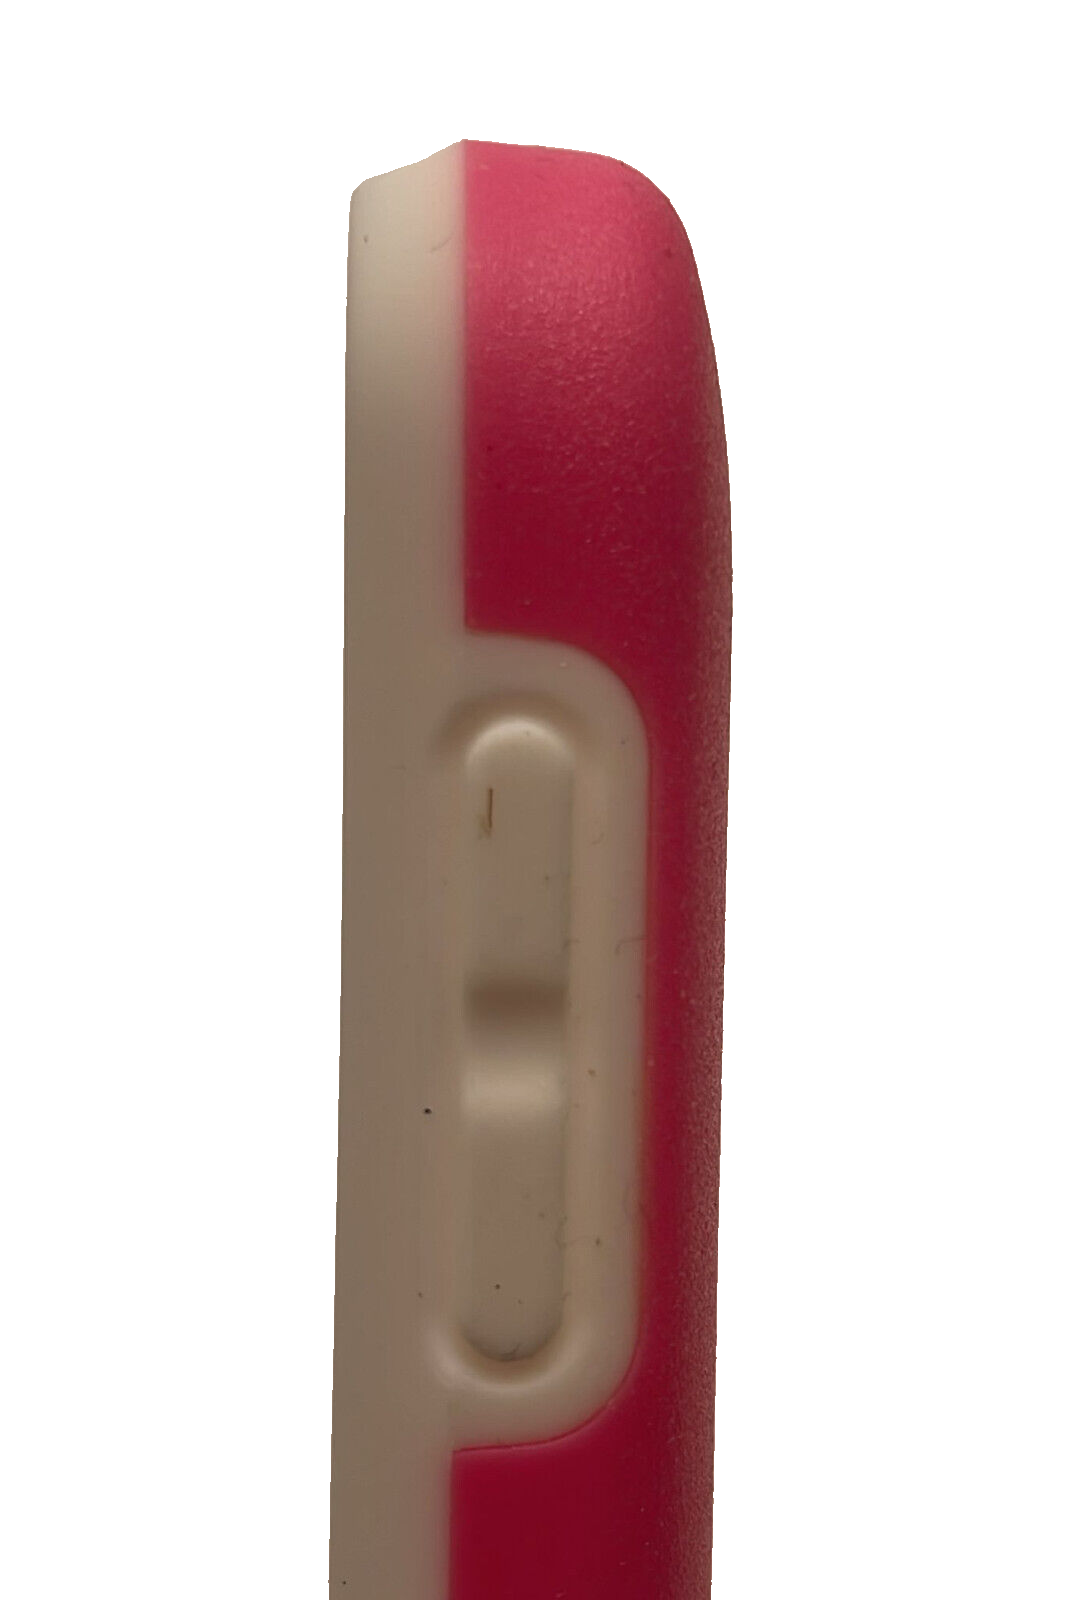 ONDIGO Intact Hard Case for HTC Desire 510 - Pink/White ONDIGO D510-PNKWHT - фотография #4